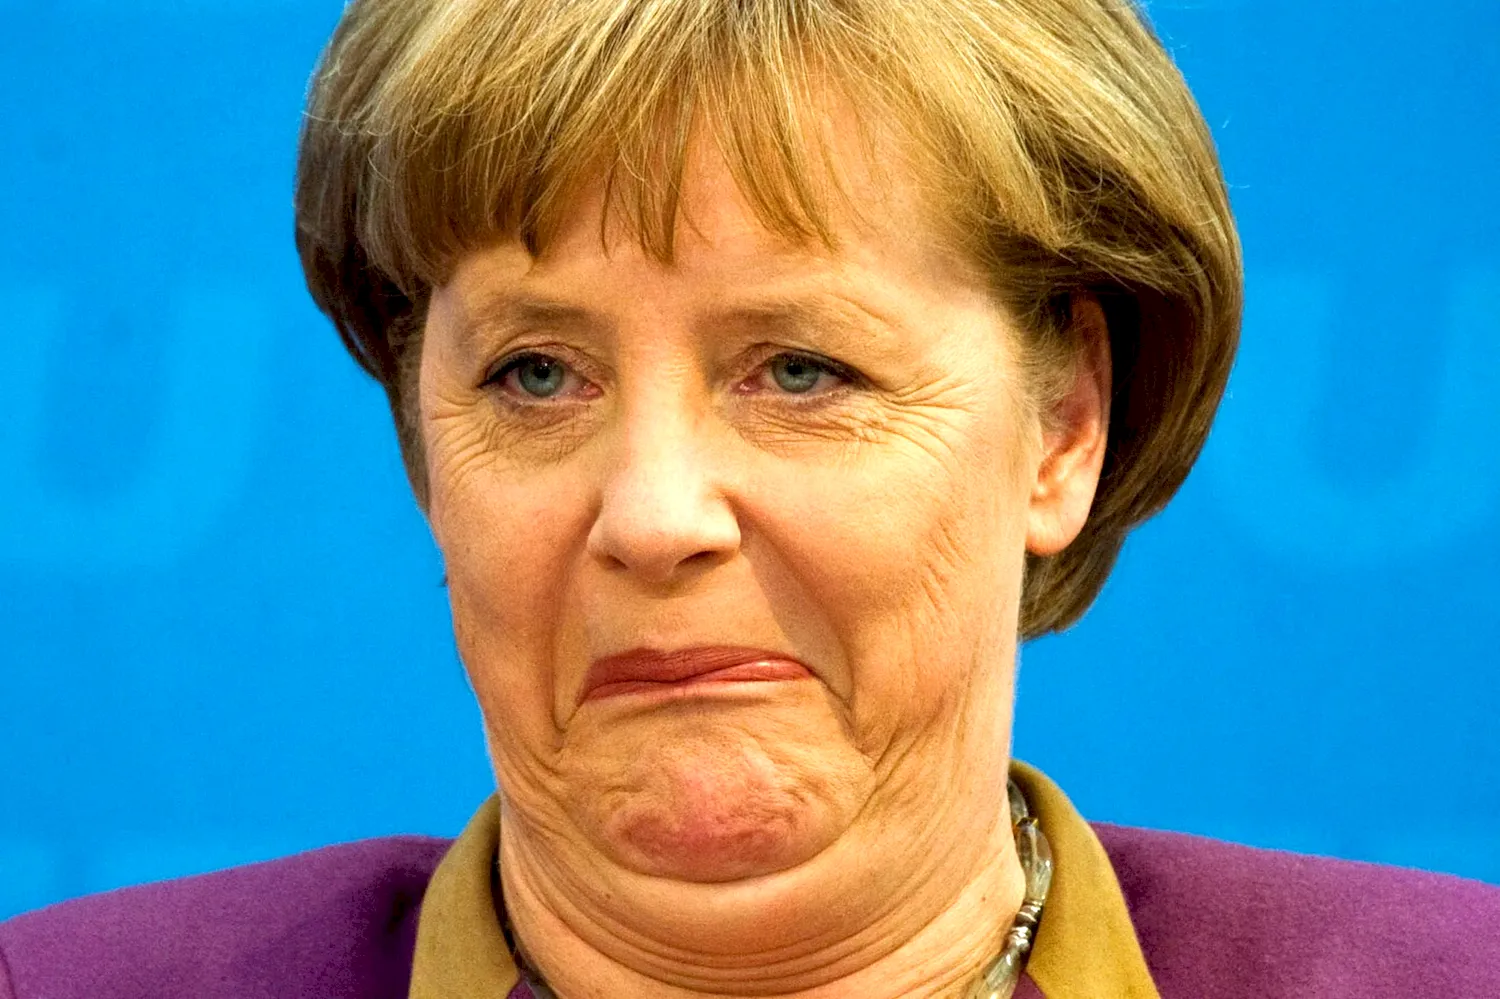 Меркель